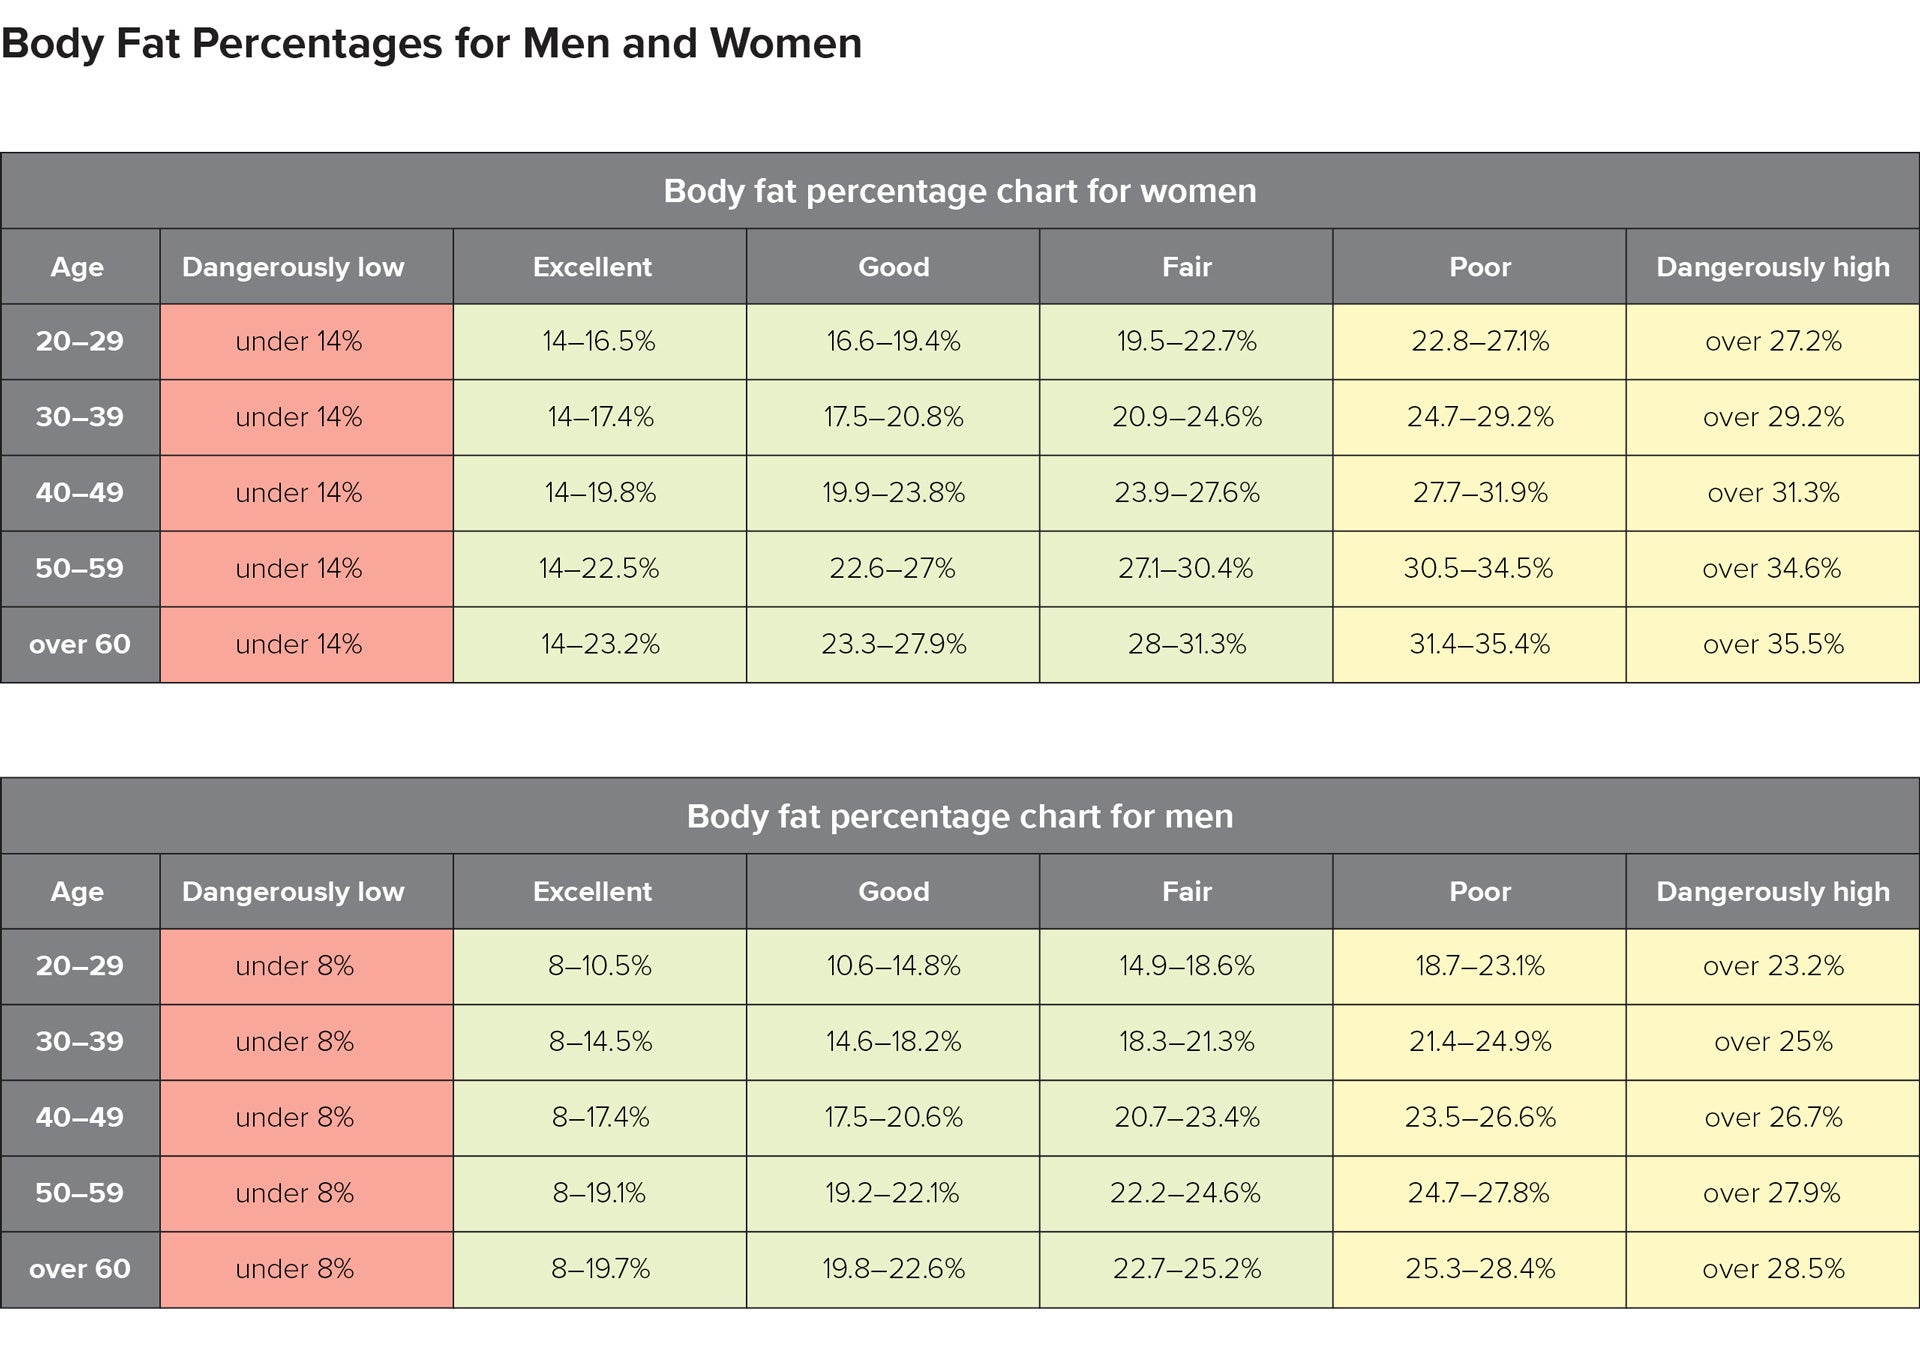 men body fat percentages